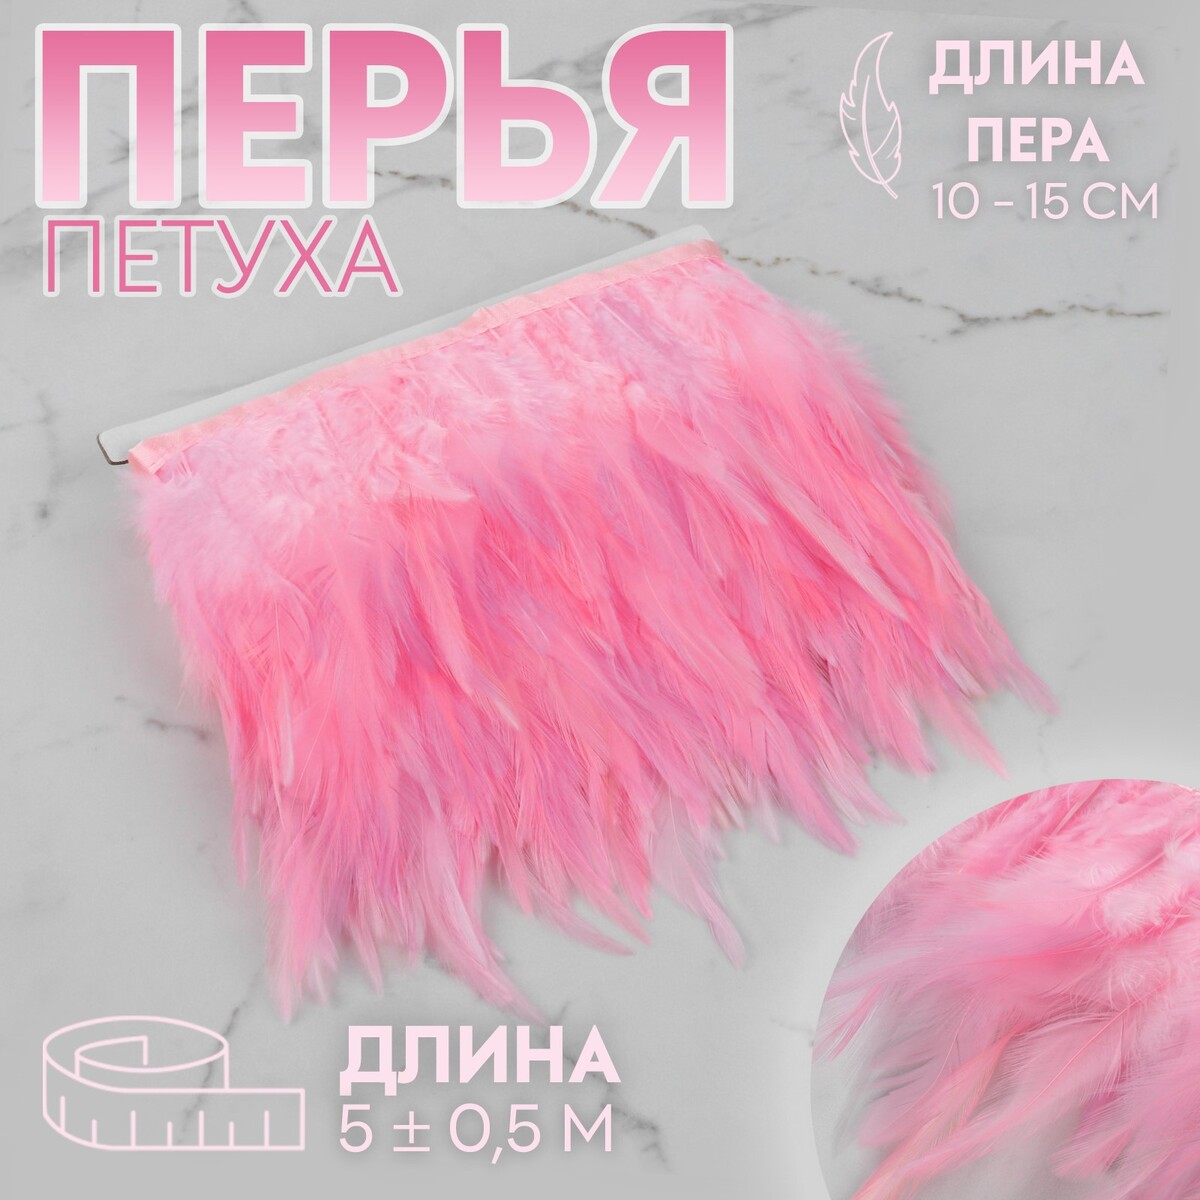 Тесьма с перьями петуха, 10-15 см, 5 ± 0,5 м, цвет розовый тесьма с перьями страуса 8 10 см 5 ± 0 5 м белый